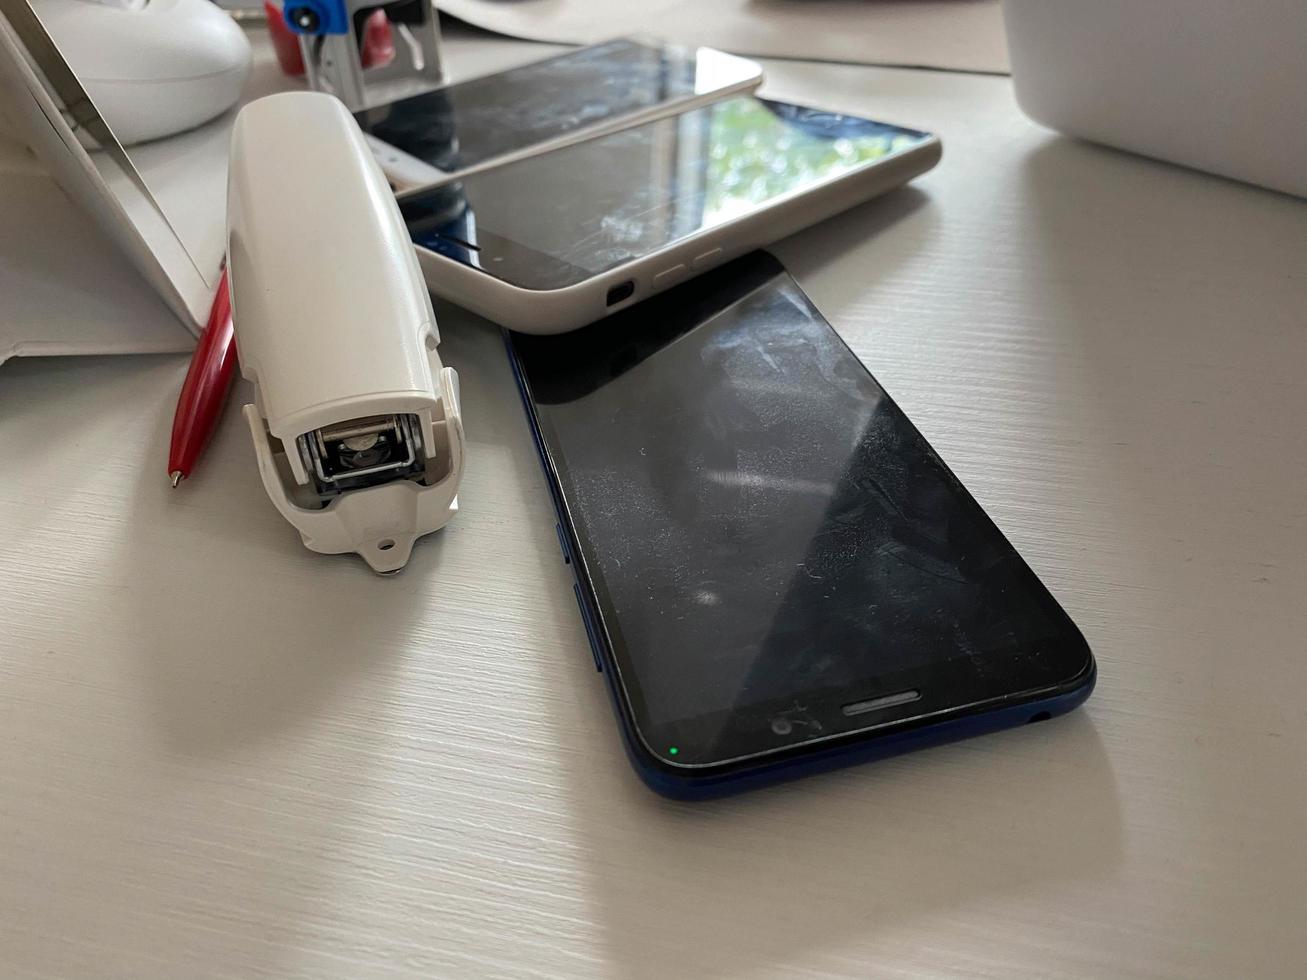 dos teléfonos móviles con pantalla táctil que funcionan, los teléfonos inteligentes se encuentran sobre la mesa en la oficina con papelería, una grapadora, un sello y una computadora portátil foto